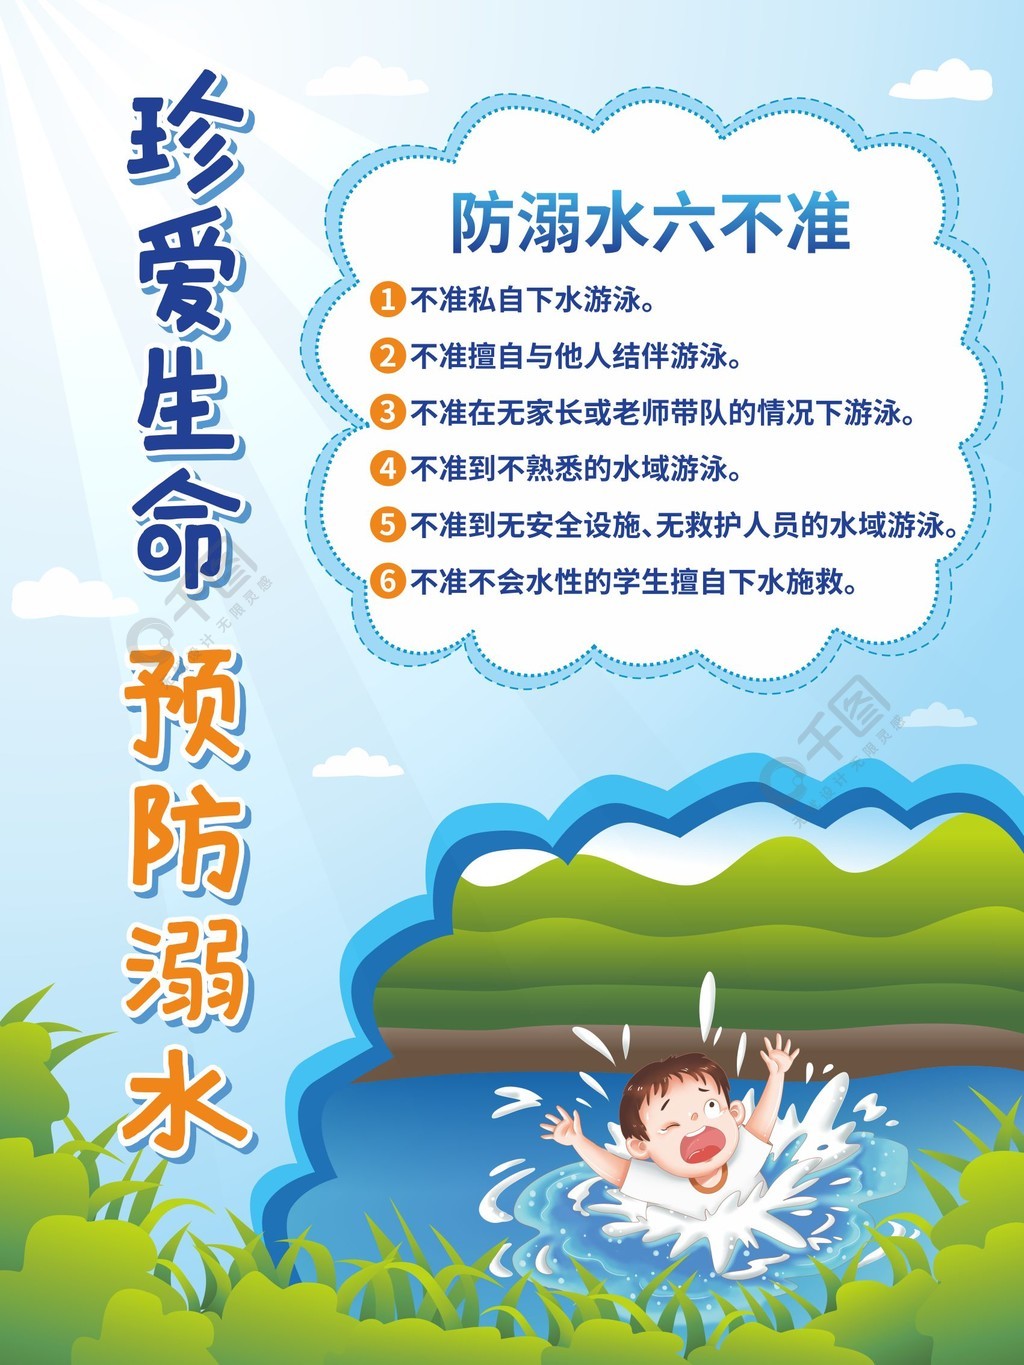 简约小清新教育培训夏季防止溺水宣传海报